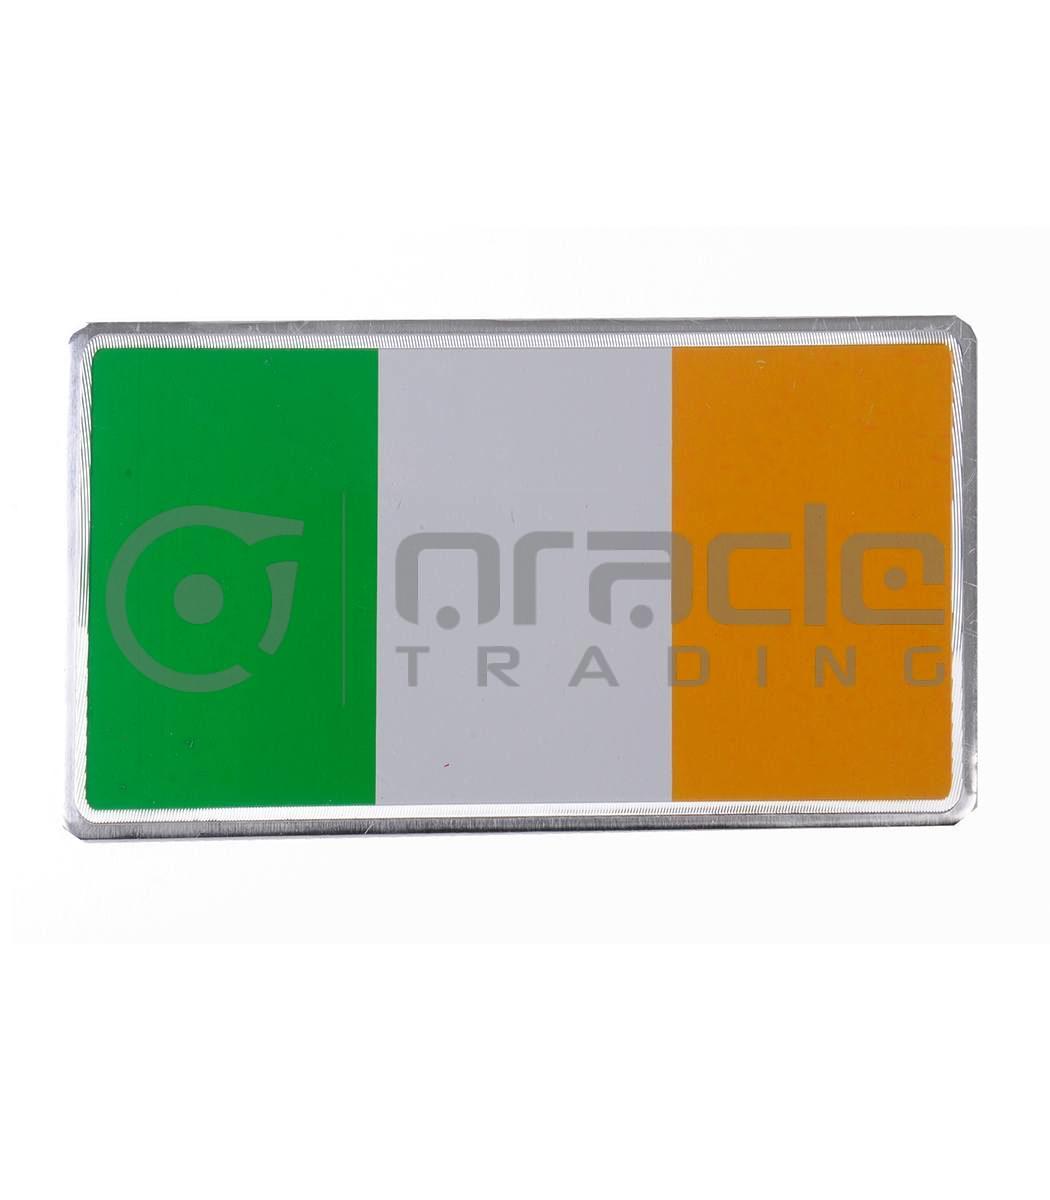 Ireland Plate Sticker